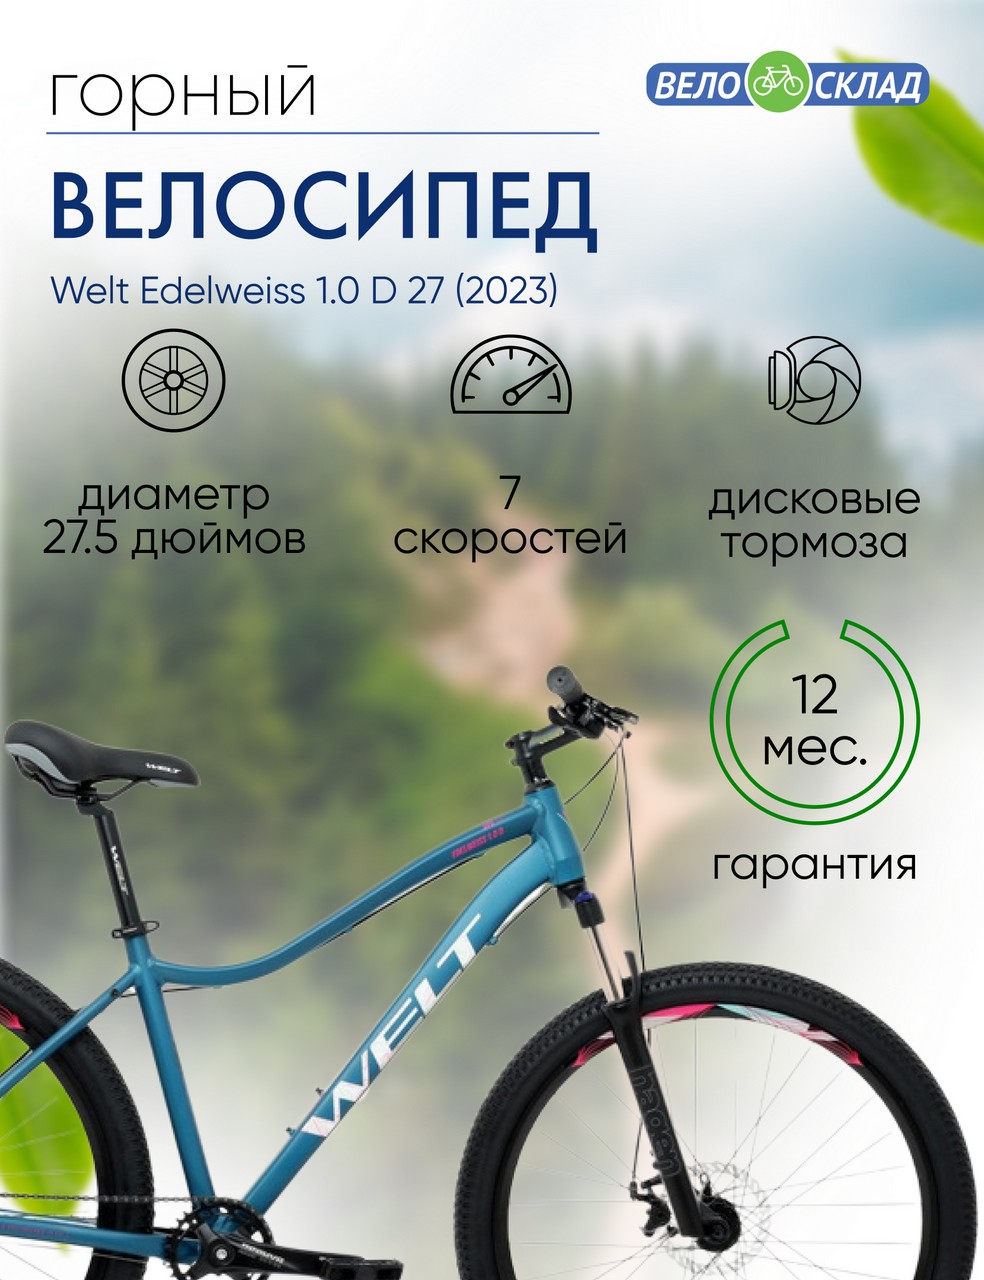 Женский велосипед Welt Edelweiss 1.0 D 27, год 2023, цвет Синий, ростовка 15.5